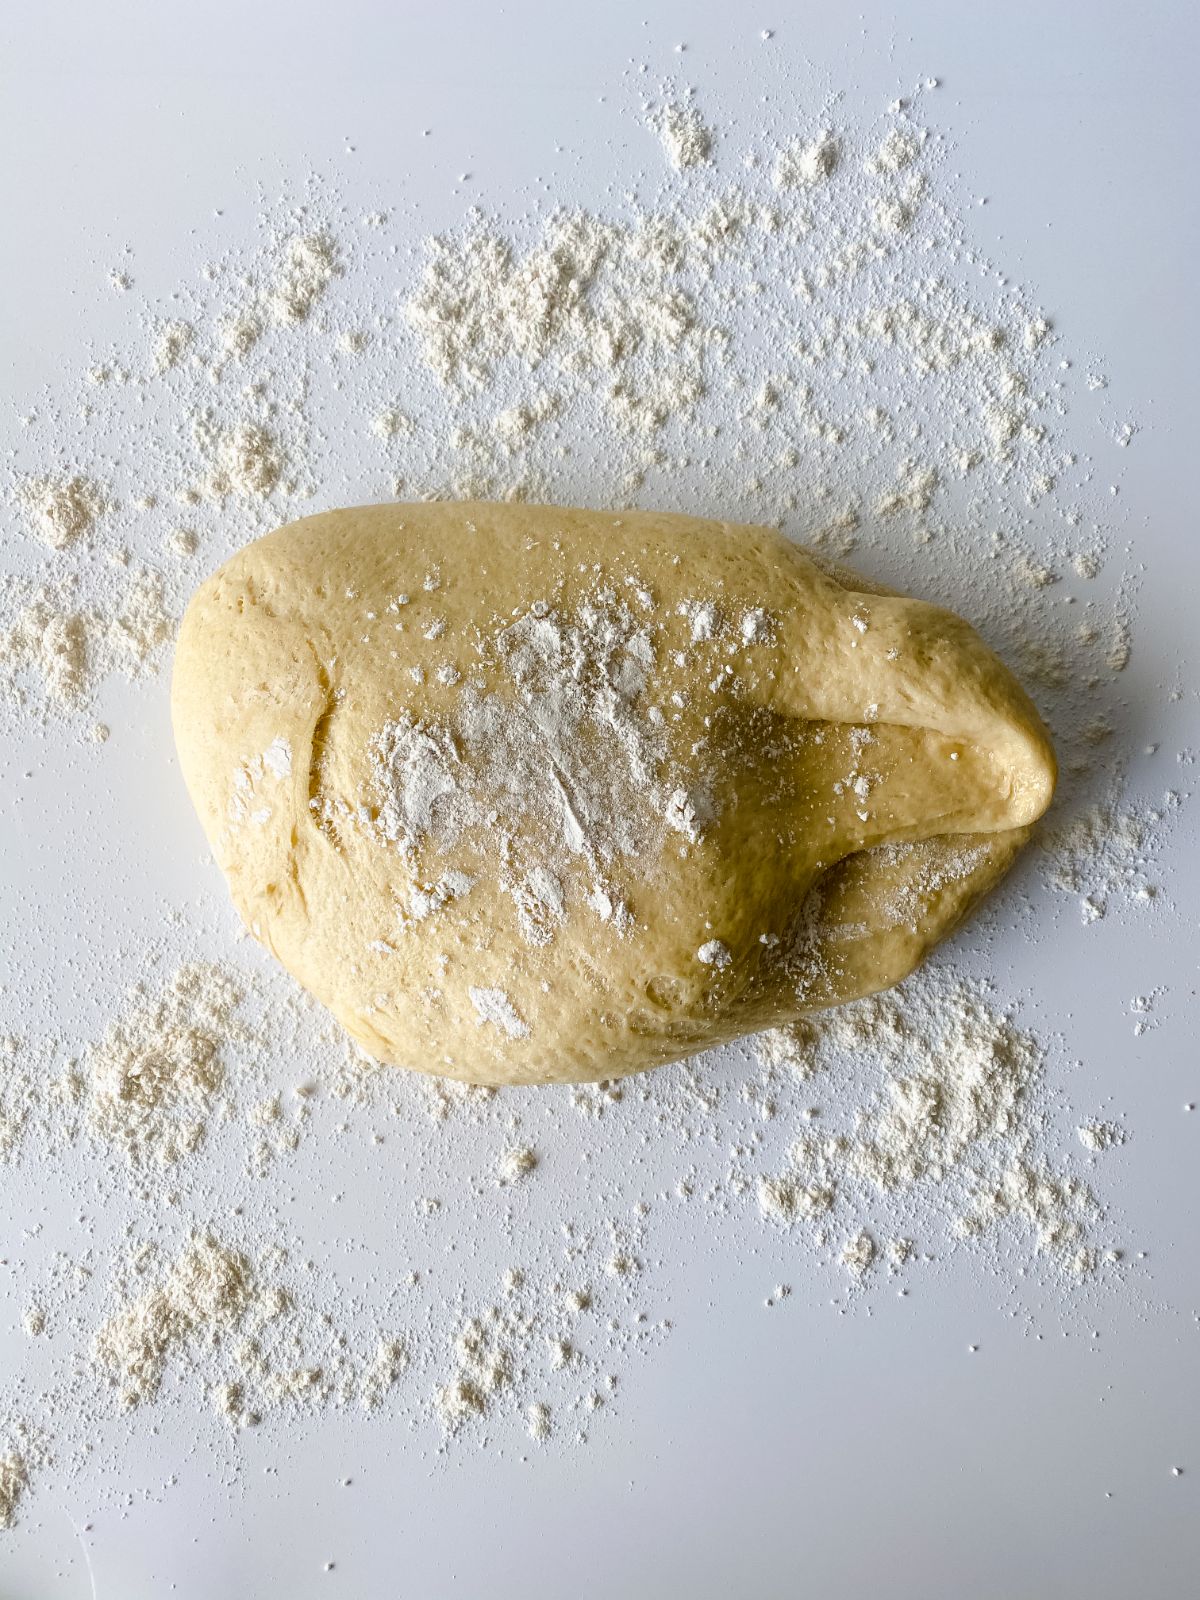 dough on table with flour